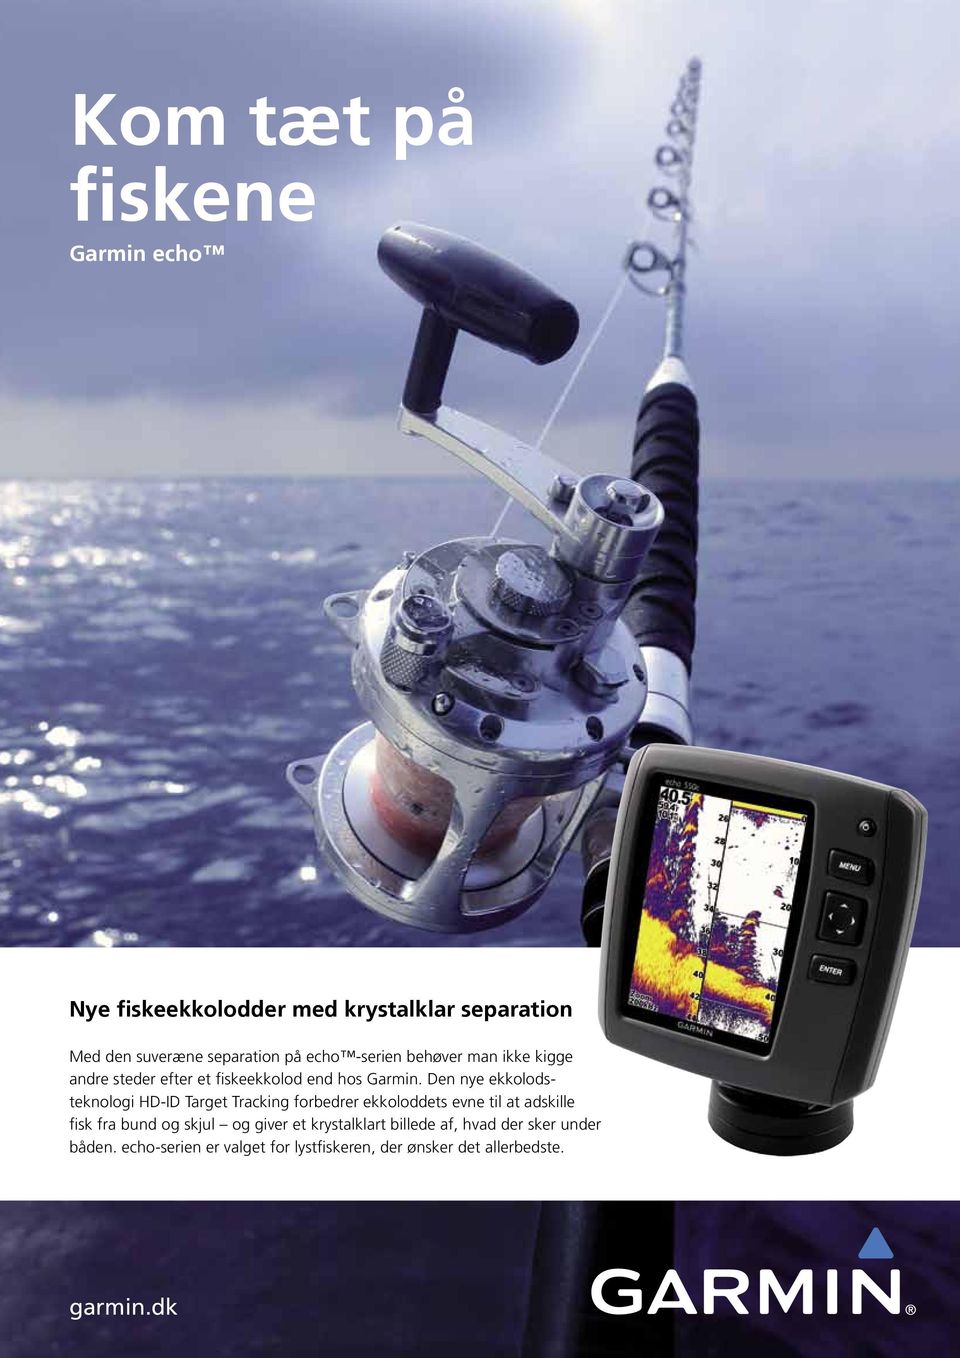 Den nye ekkolodsteknologi HD-ID Target Tracking forbedrer ekkoloddets evne til at adskille fisk fra bund og skjul